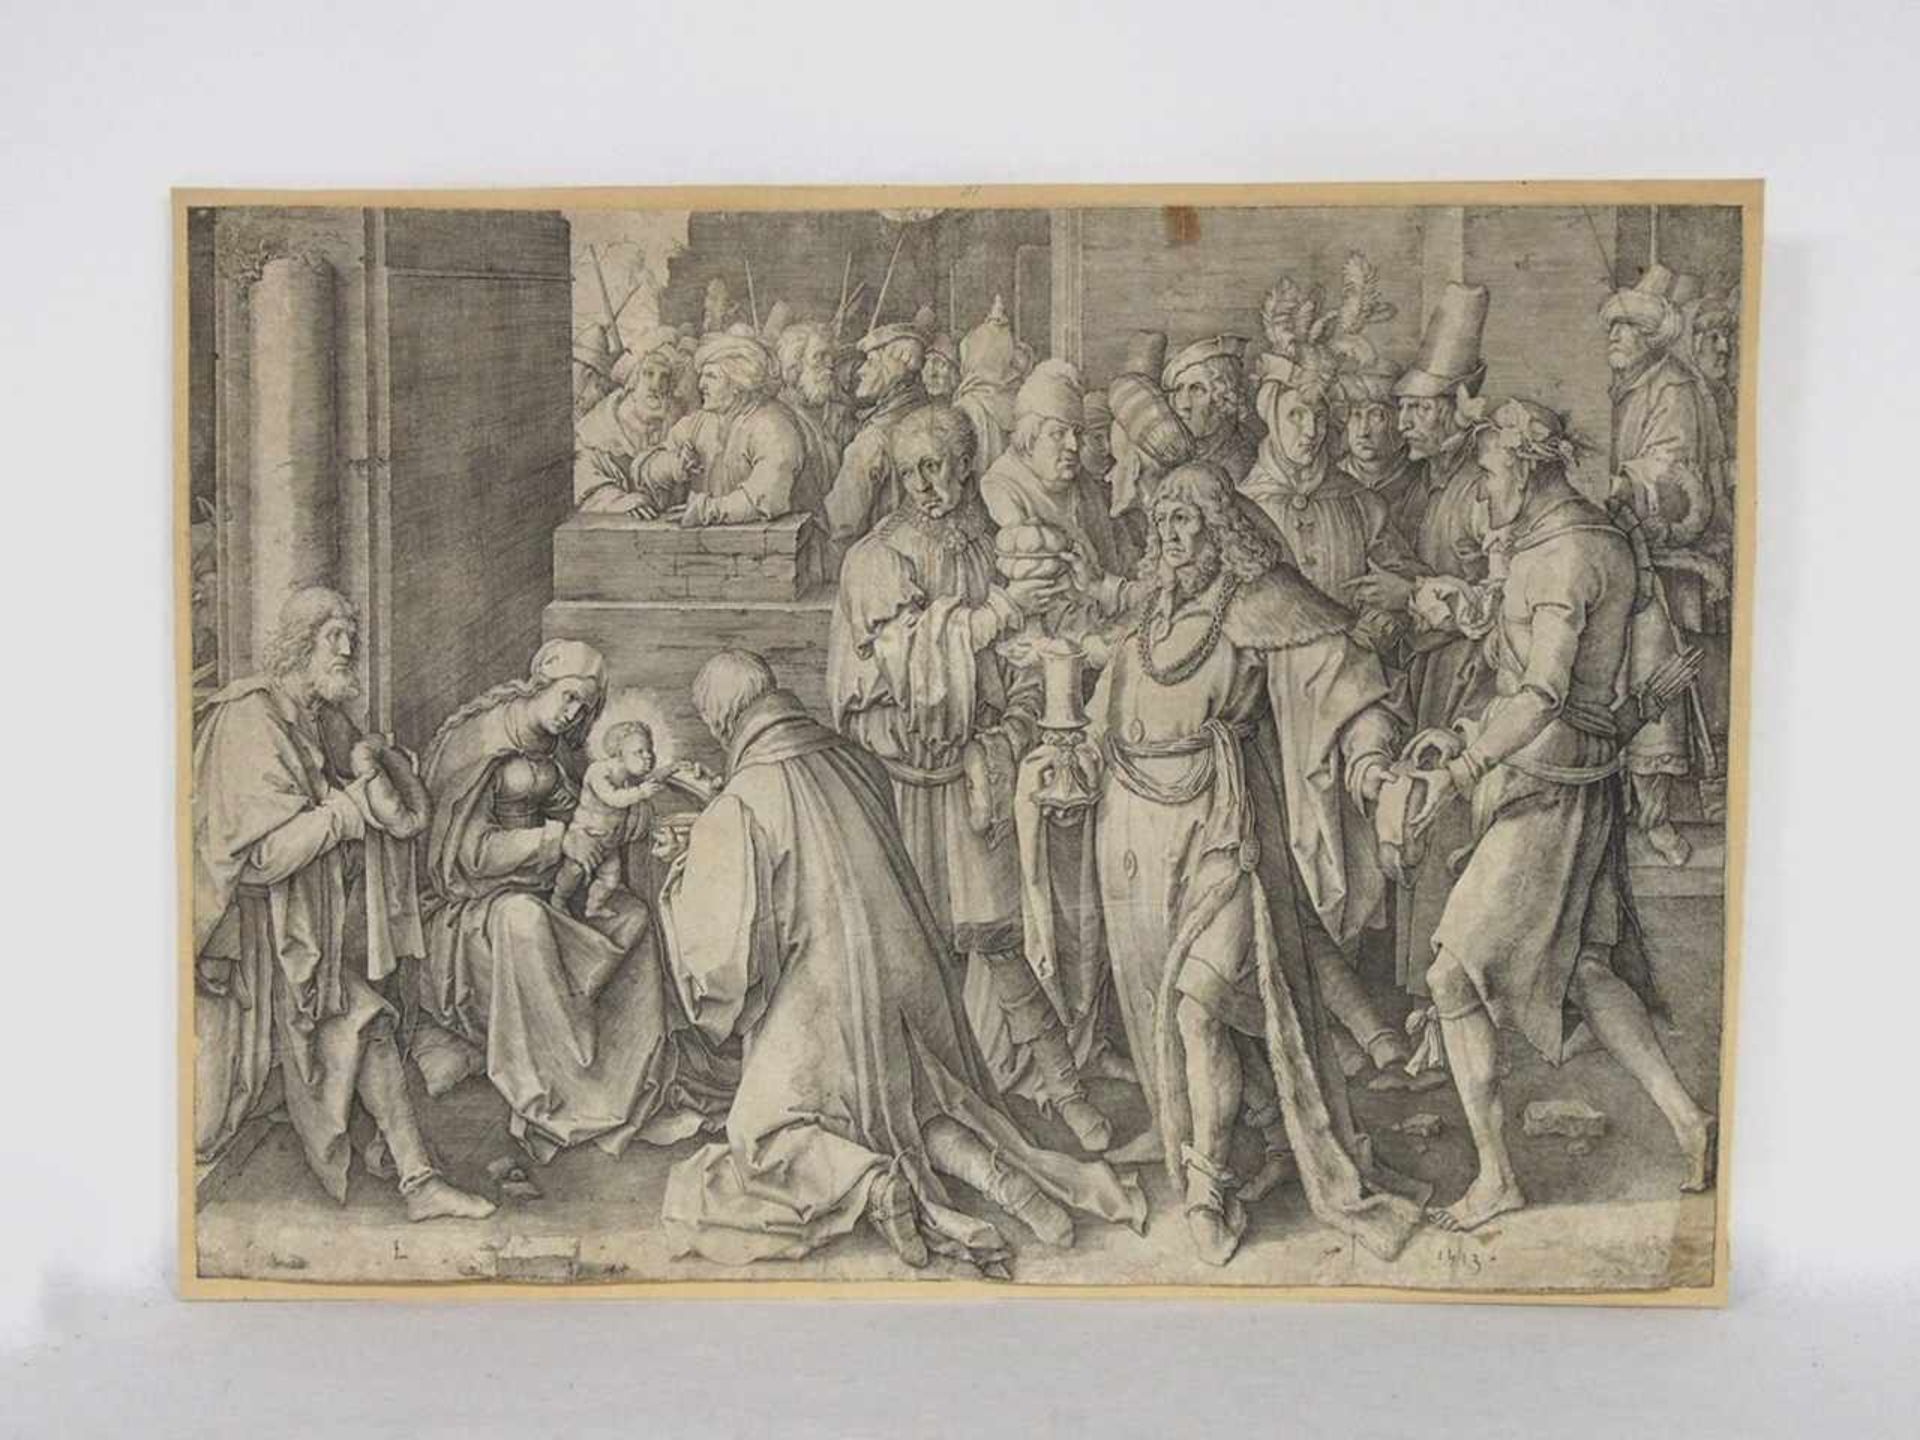 LEYDEN, Lucas van1494-1533AnbetungKupferstich, 1513, 30 x 43,5 cm, auf Papier montiert (